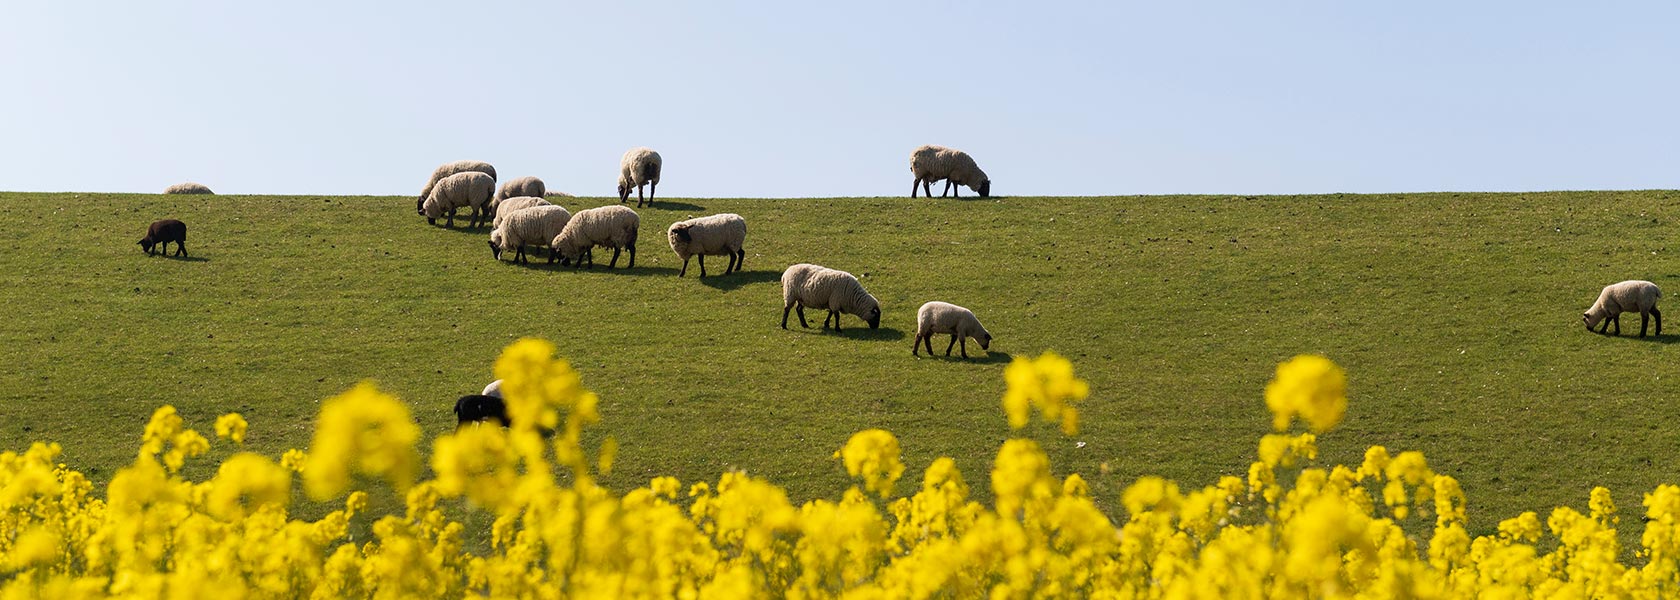 Frühling an der Nordsee mit Schafen auf dem Deich